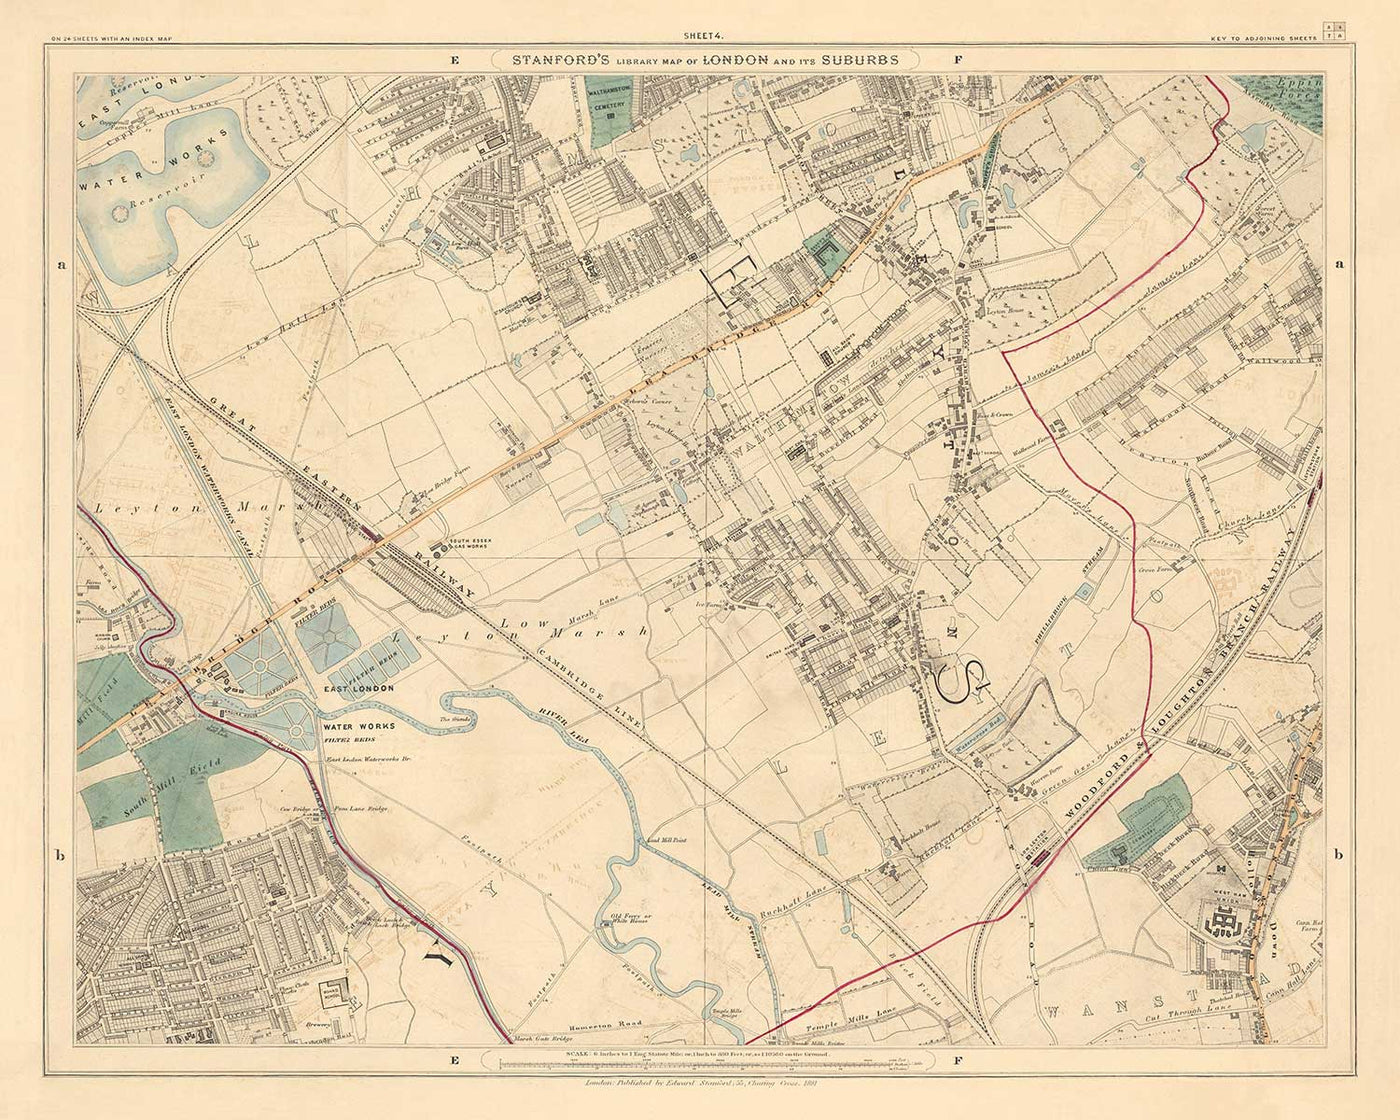 Antiguo mapa en color del noreste de Londres, 1891 - Walthamstow, Leyton, Wanstead, Leytonstone, Lea - E5, E10, E11, E17